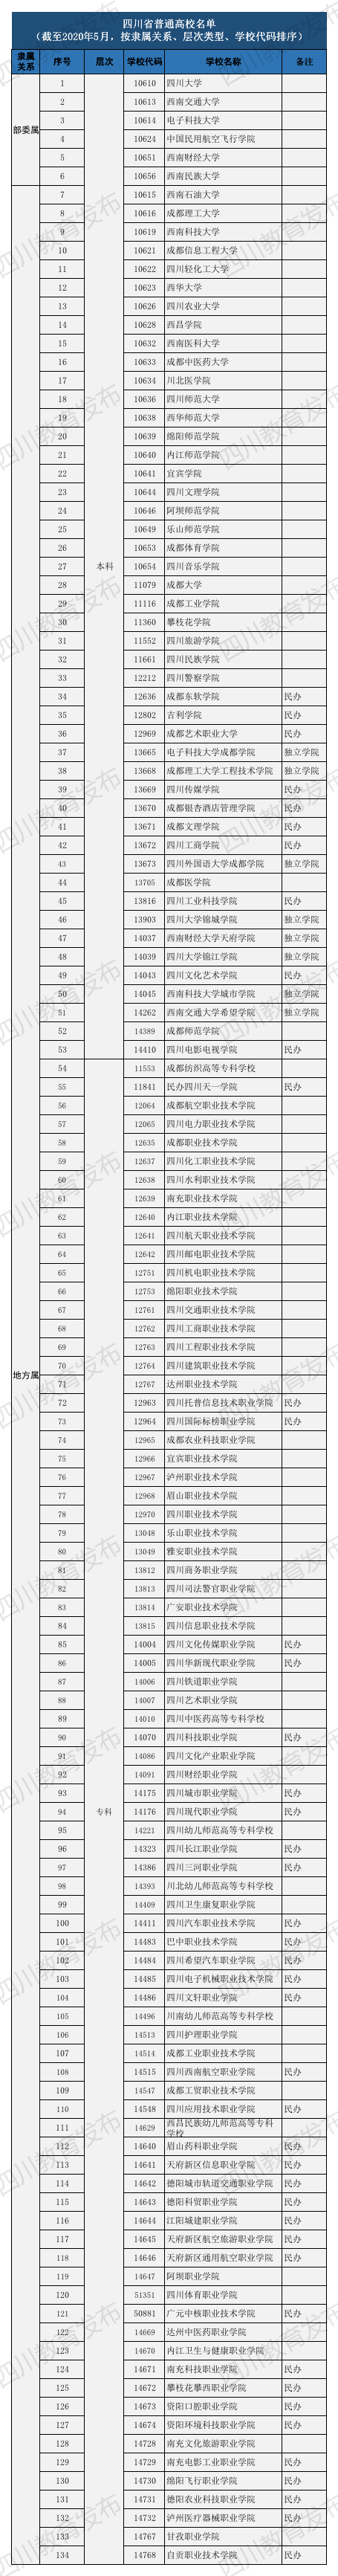 2021年四川省134所正规高校名单公布